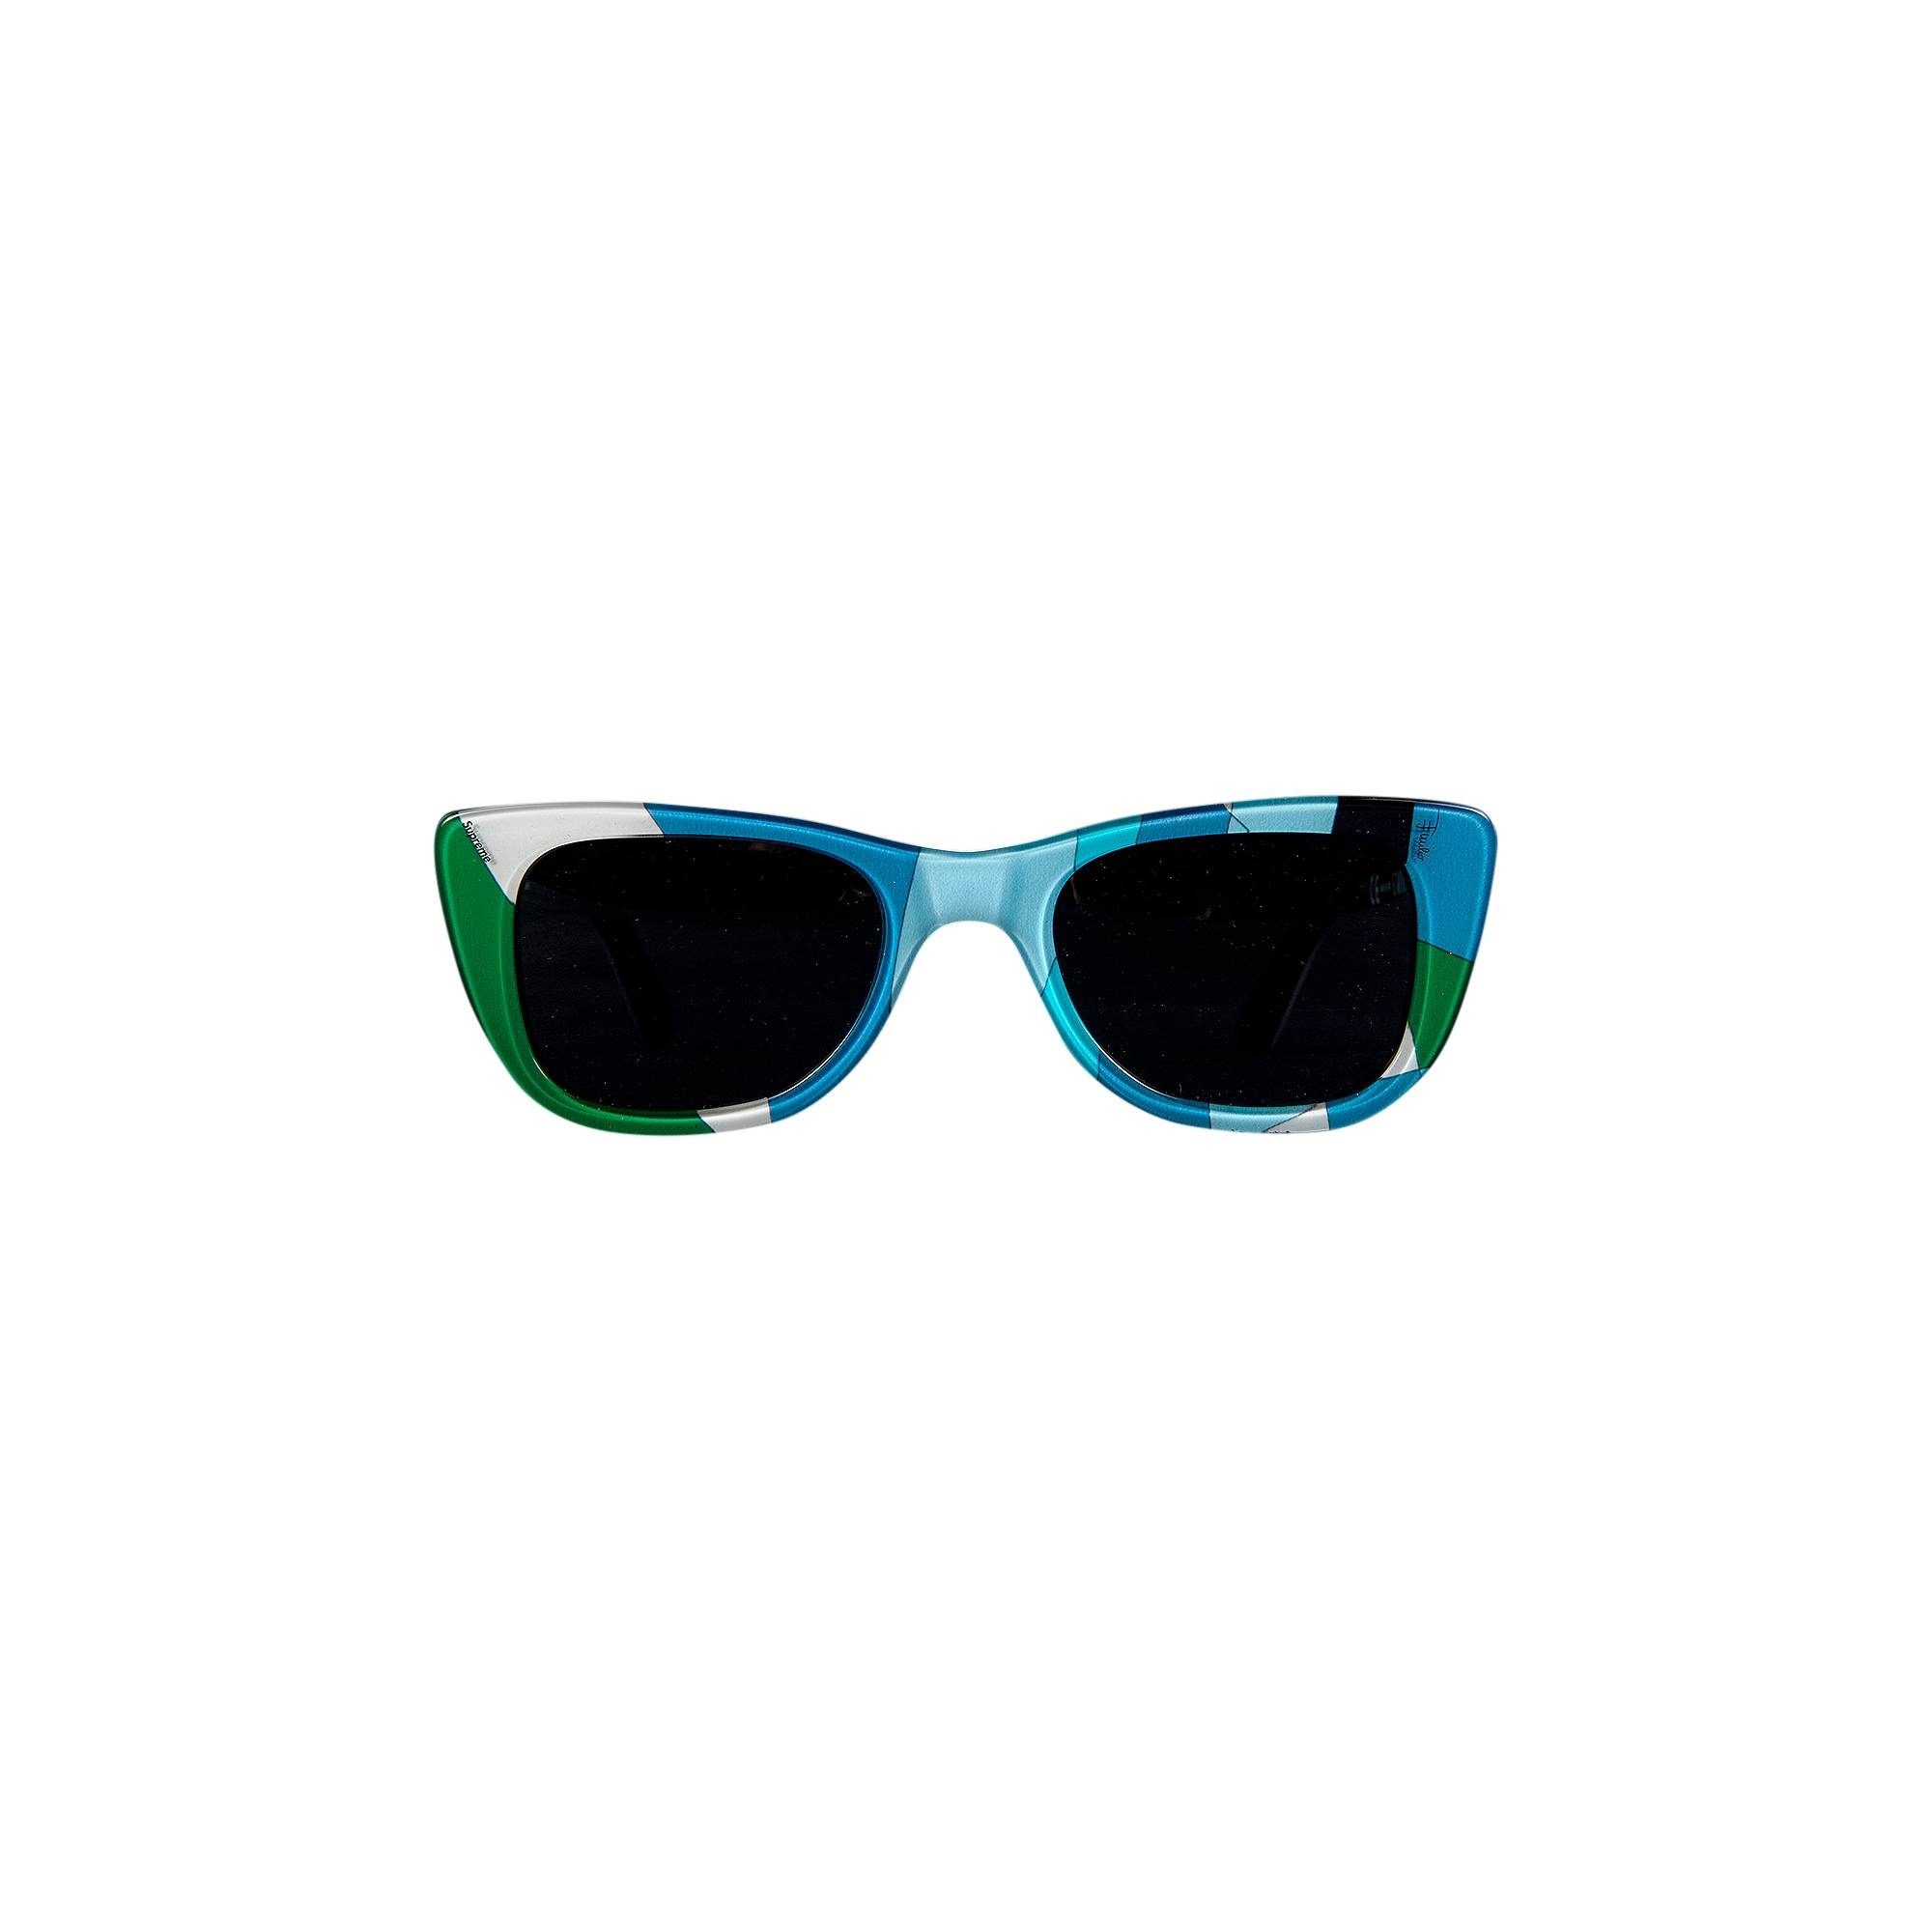 Supreme x Emilio Pucci Cat Sunglasses 'Blue' - 2